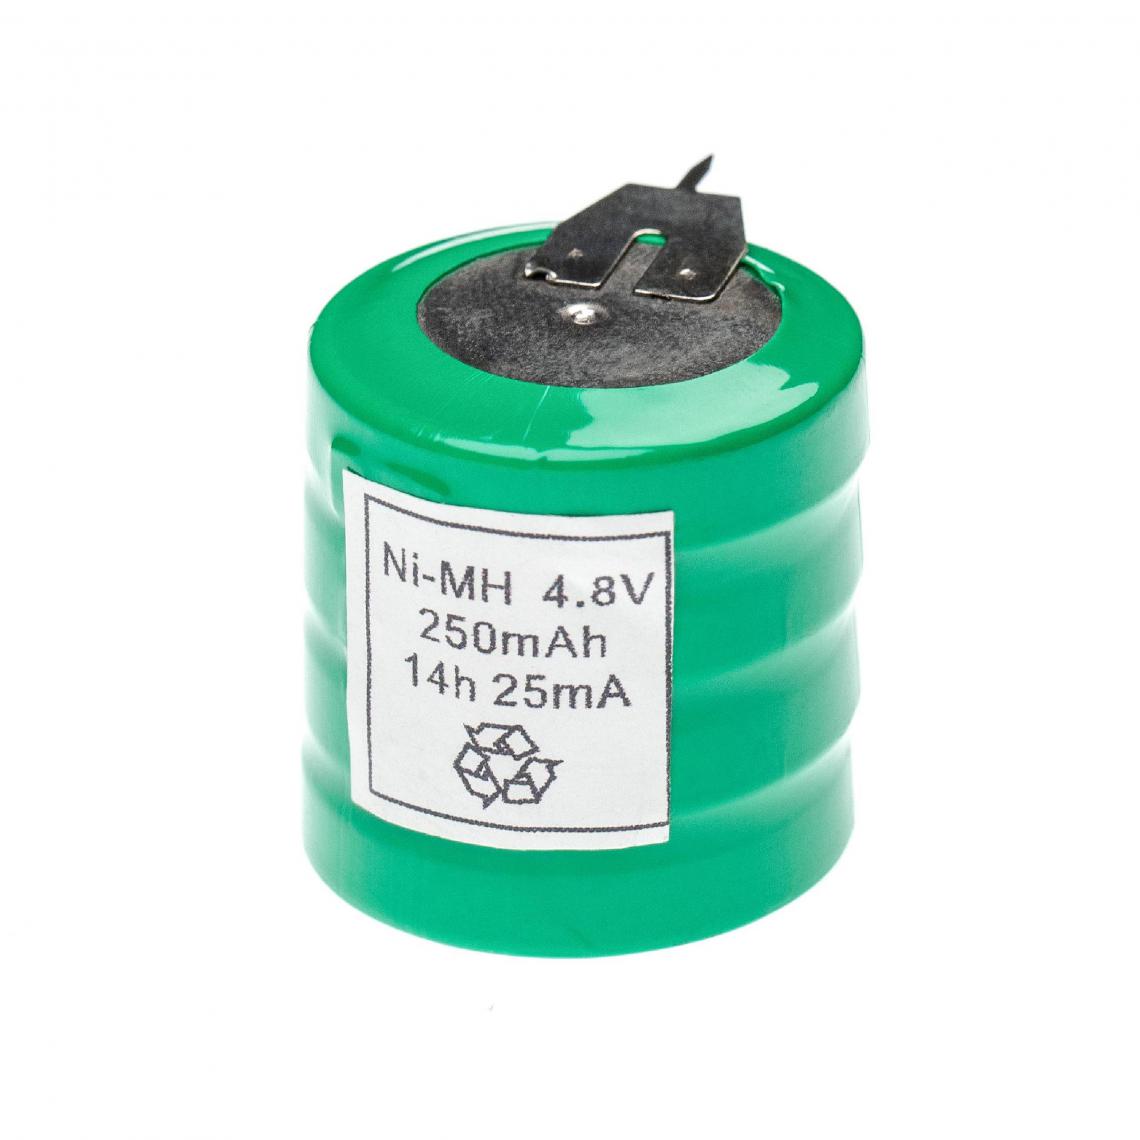 Vhbw - vhbw NiMH pile bouton de remplacement pour type V250H 3 épingles 250mAh 4,8V convient pour les batteries de modélisme etc. - Autre appareil de mesure